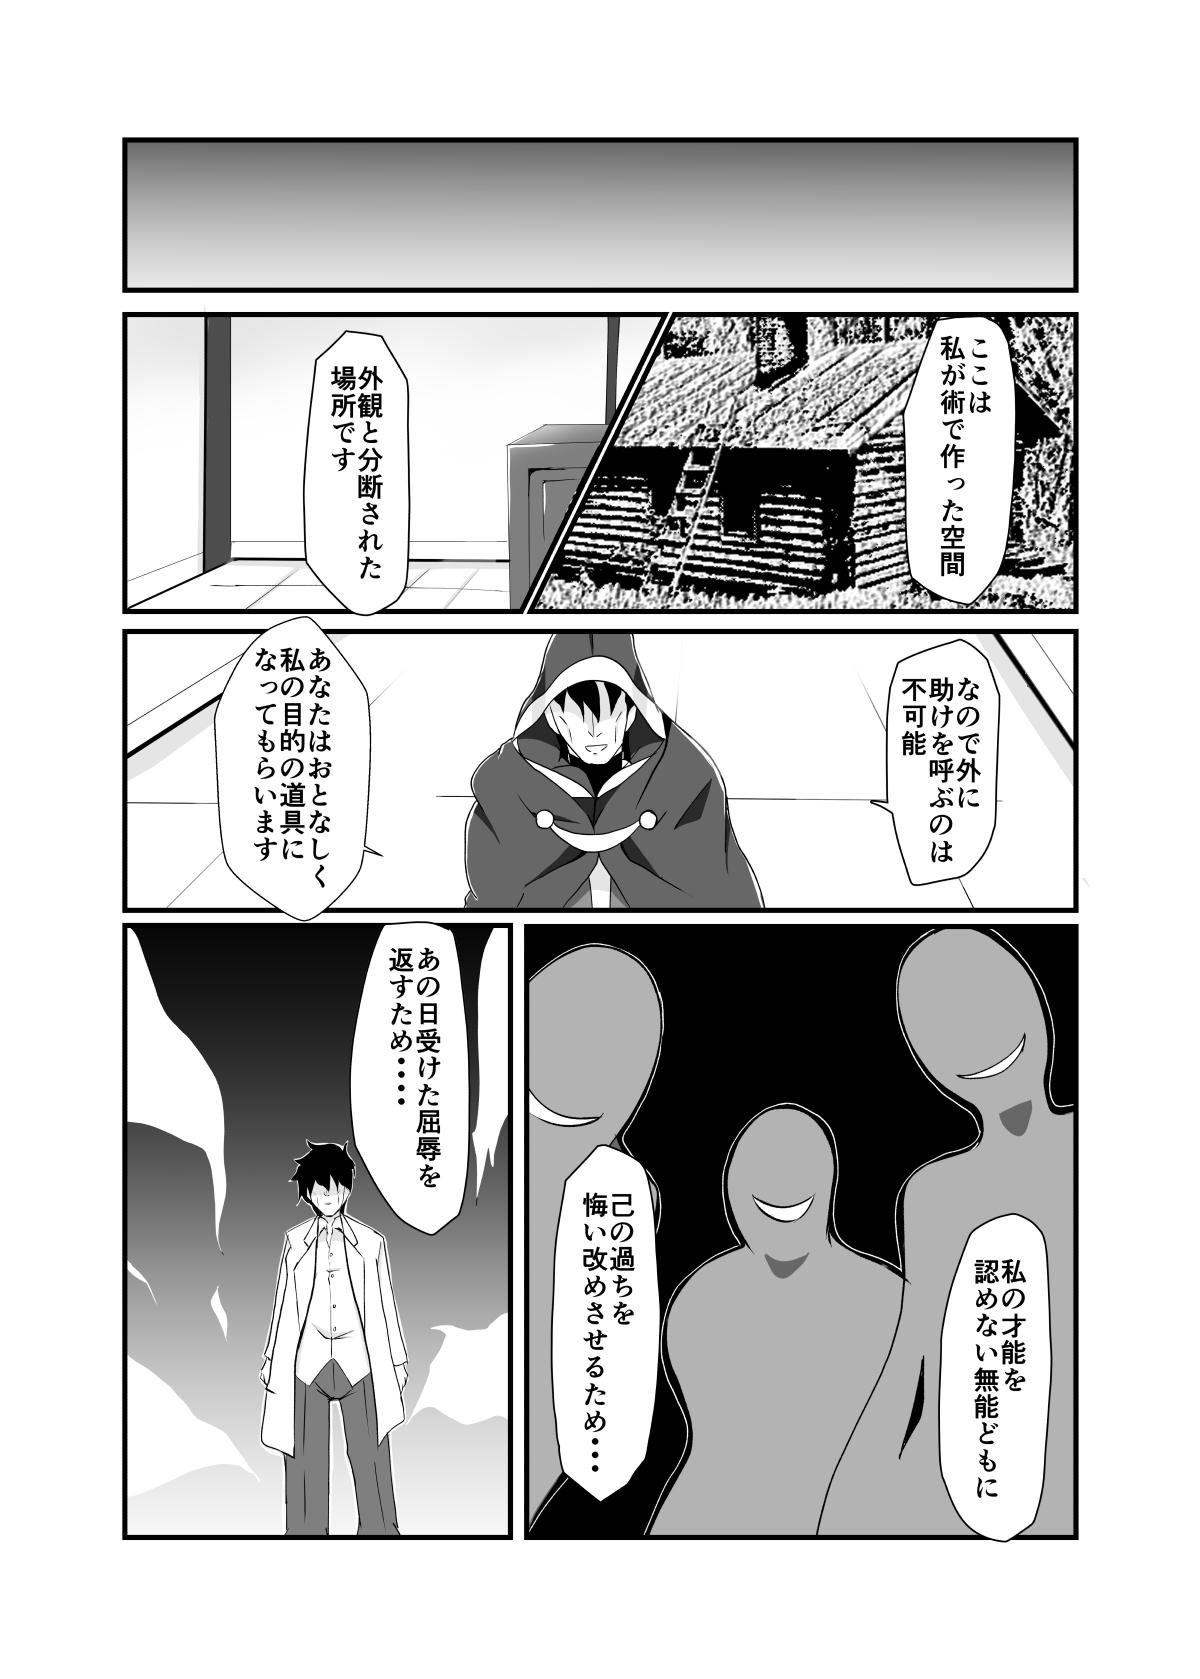 Sextoy Haiboku no Jutsushi - Senki zesshou symphogear Bondage - Page 8